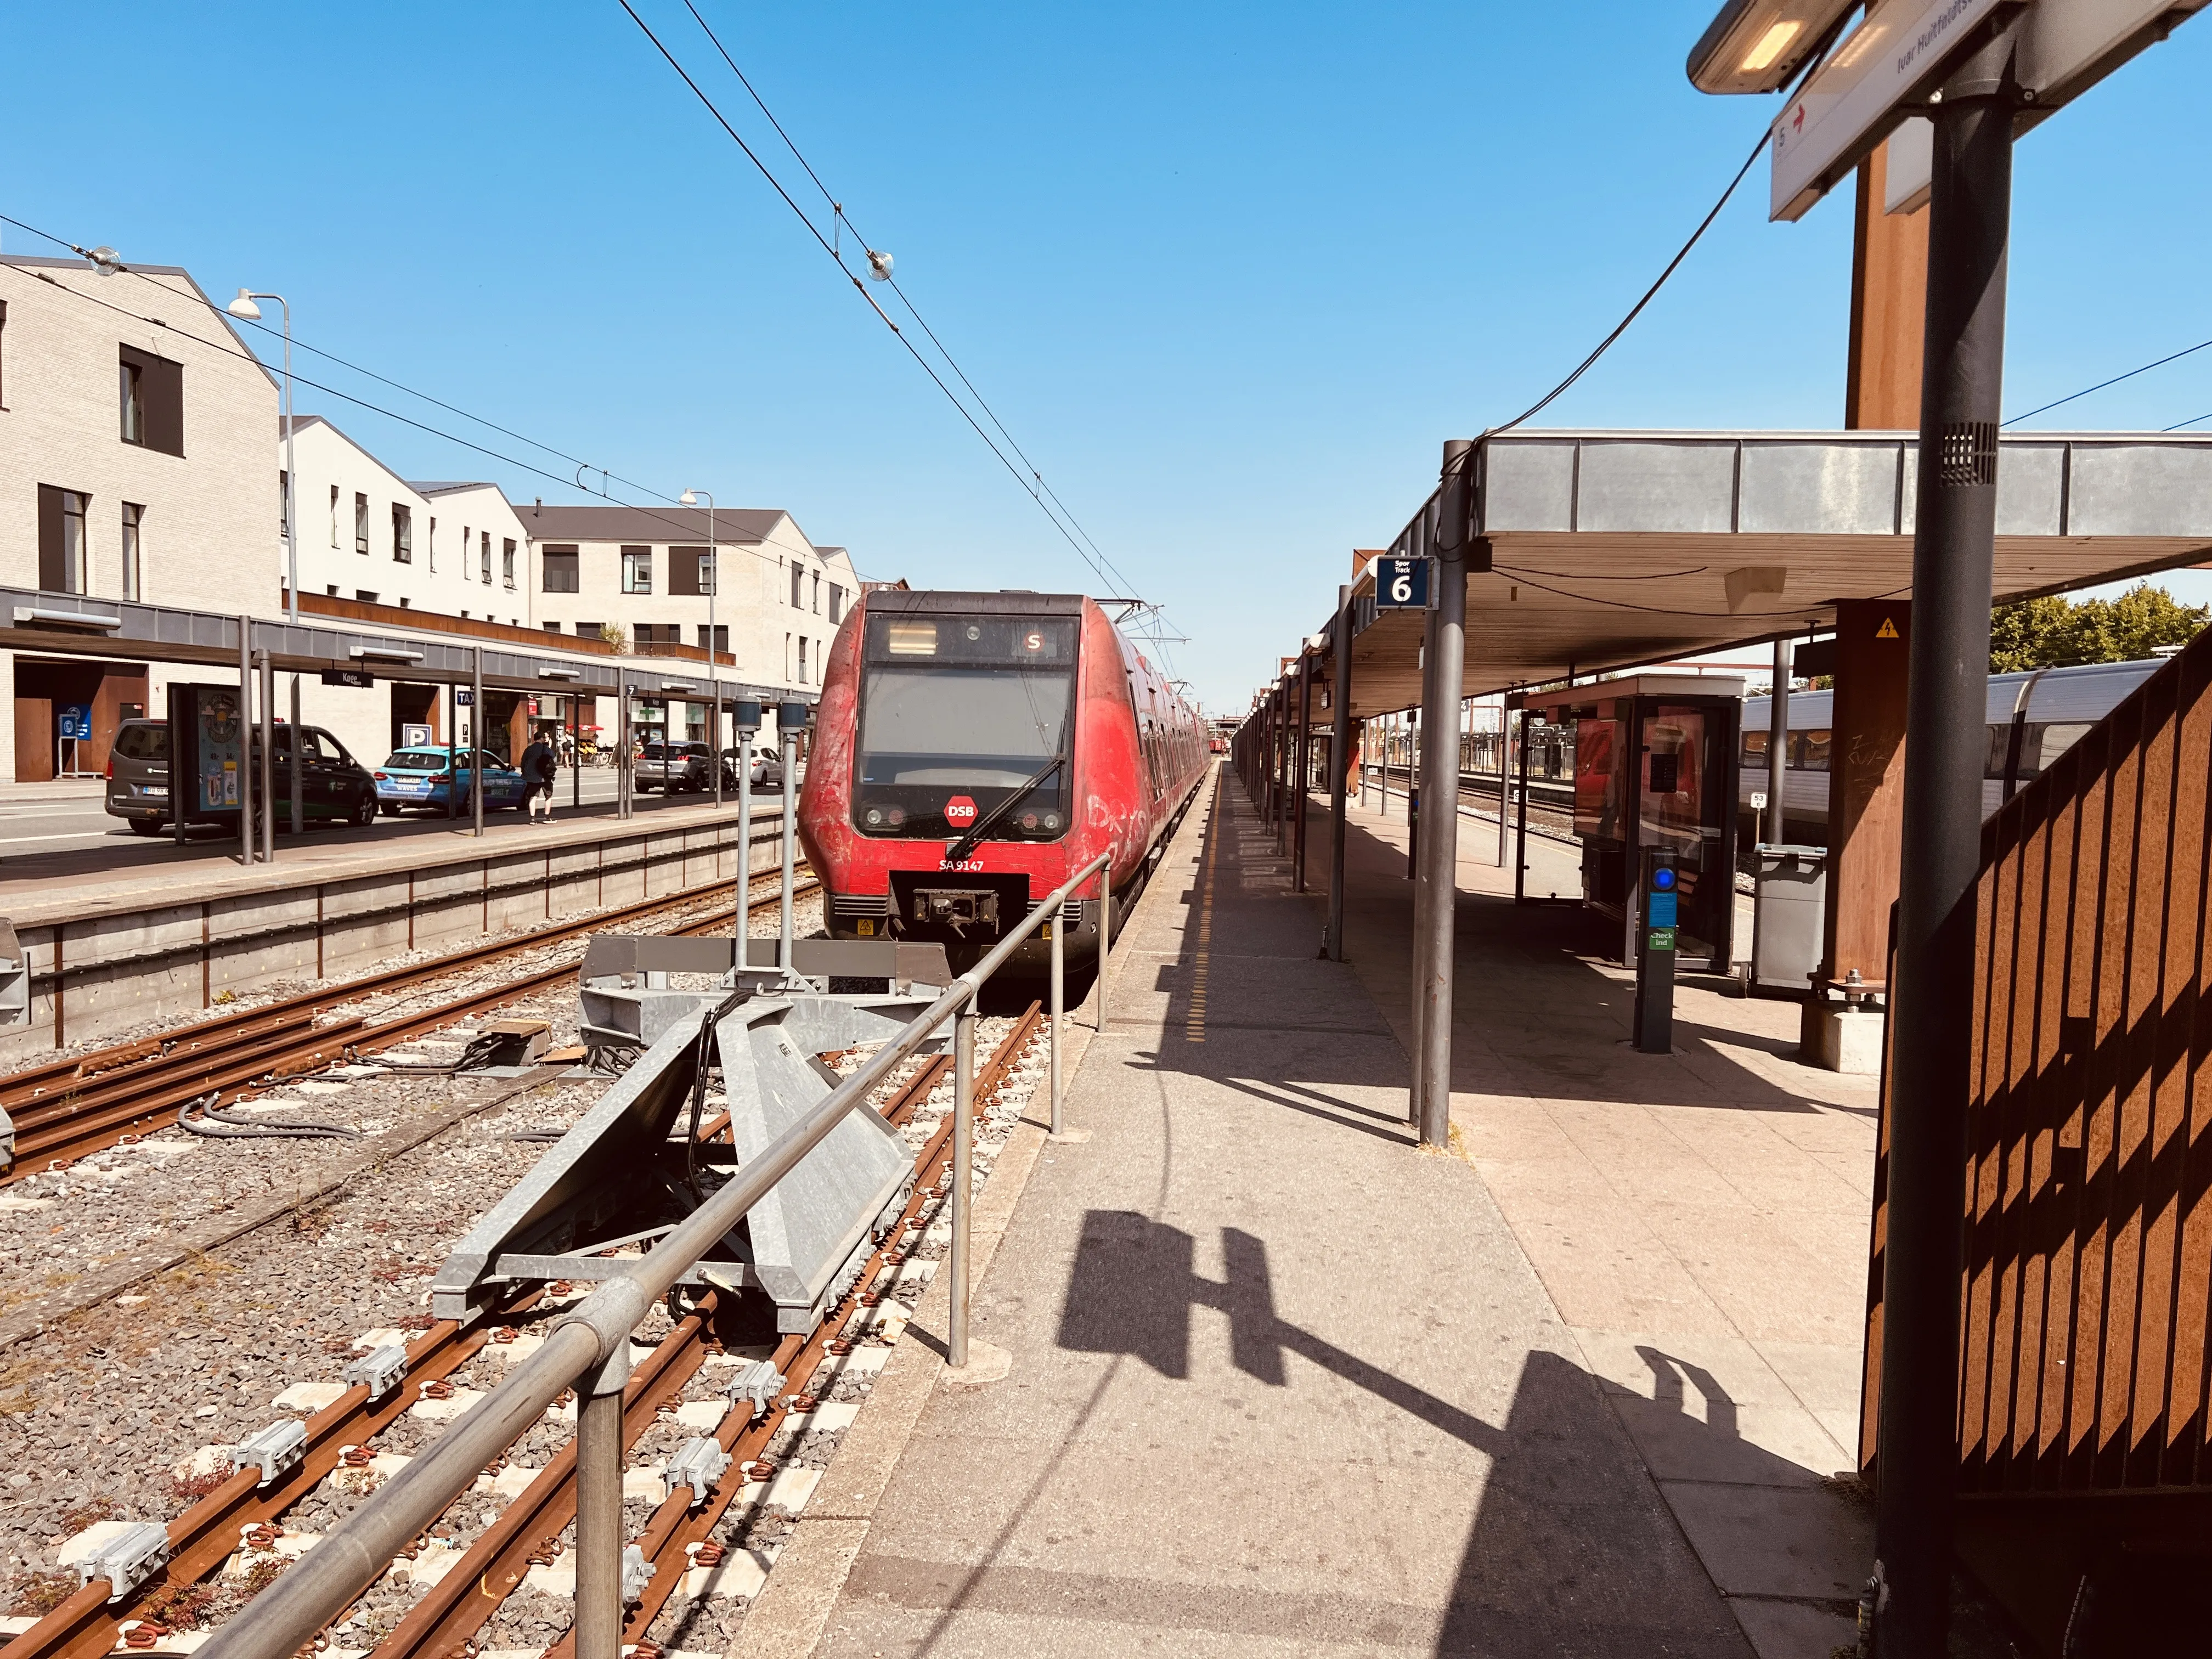 Billede af DSB SA 8147 fotograferet ud for Køge Station.